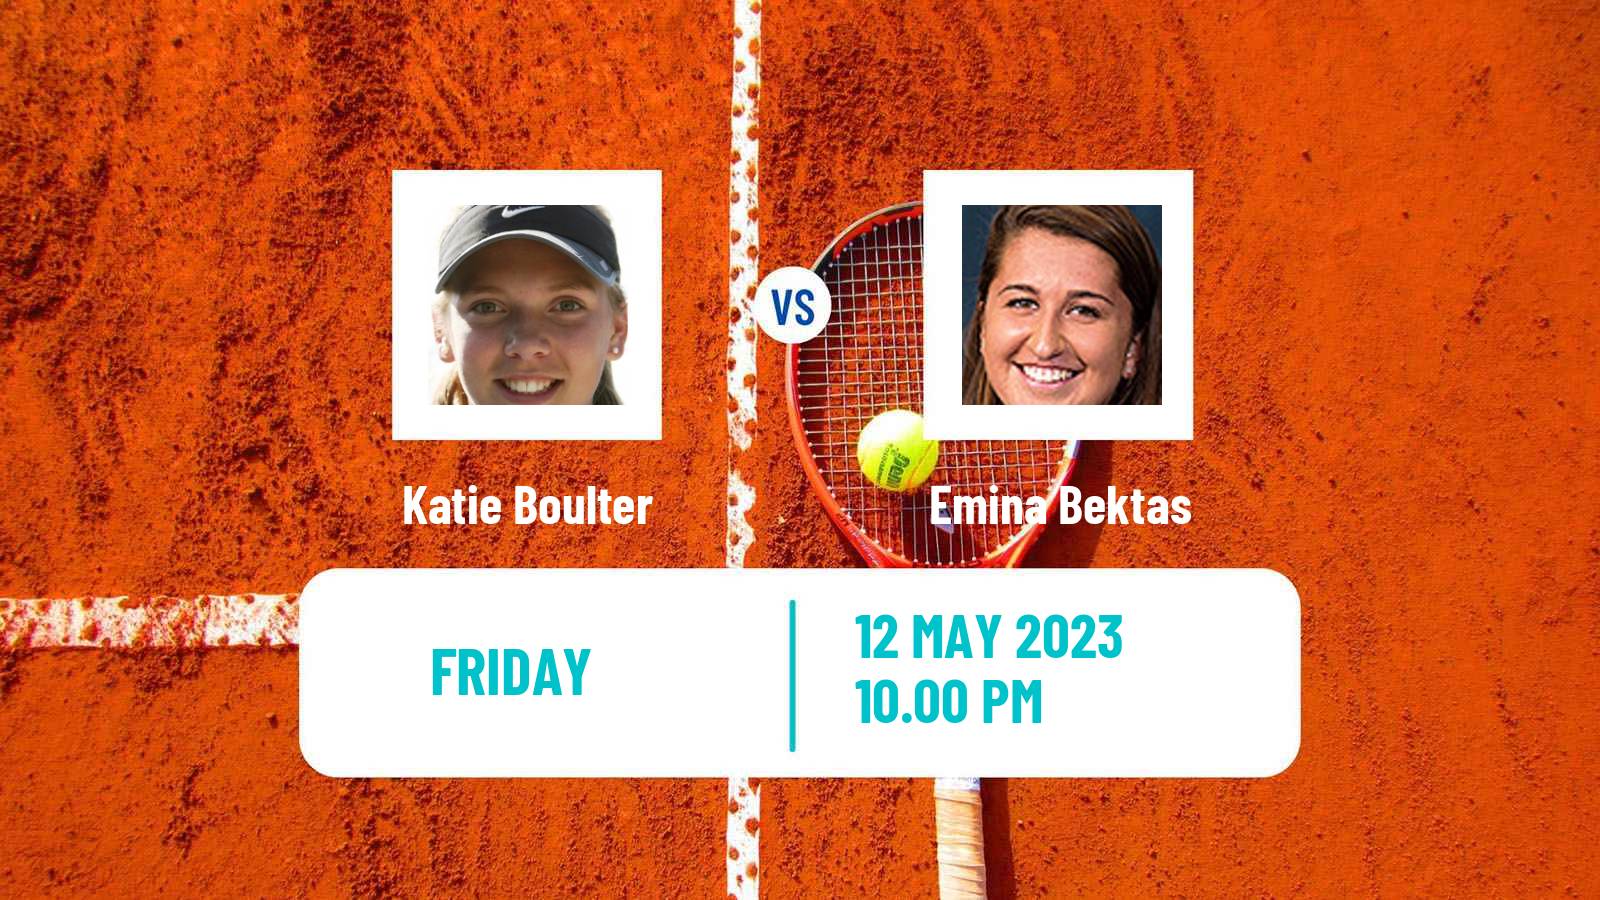 Tennis ITF Tournaments Katie Boulter - Emina Bektas